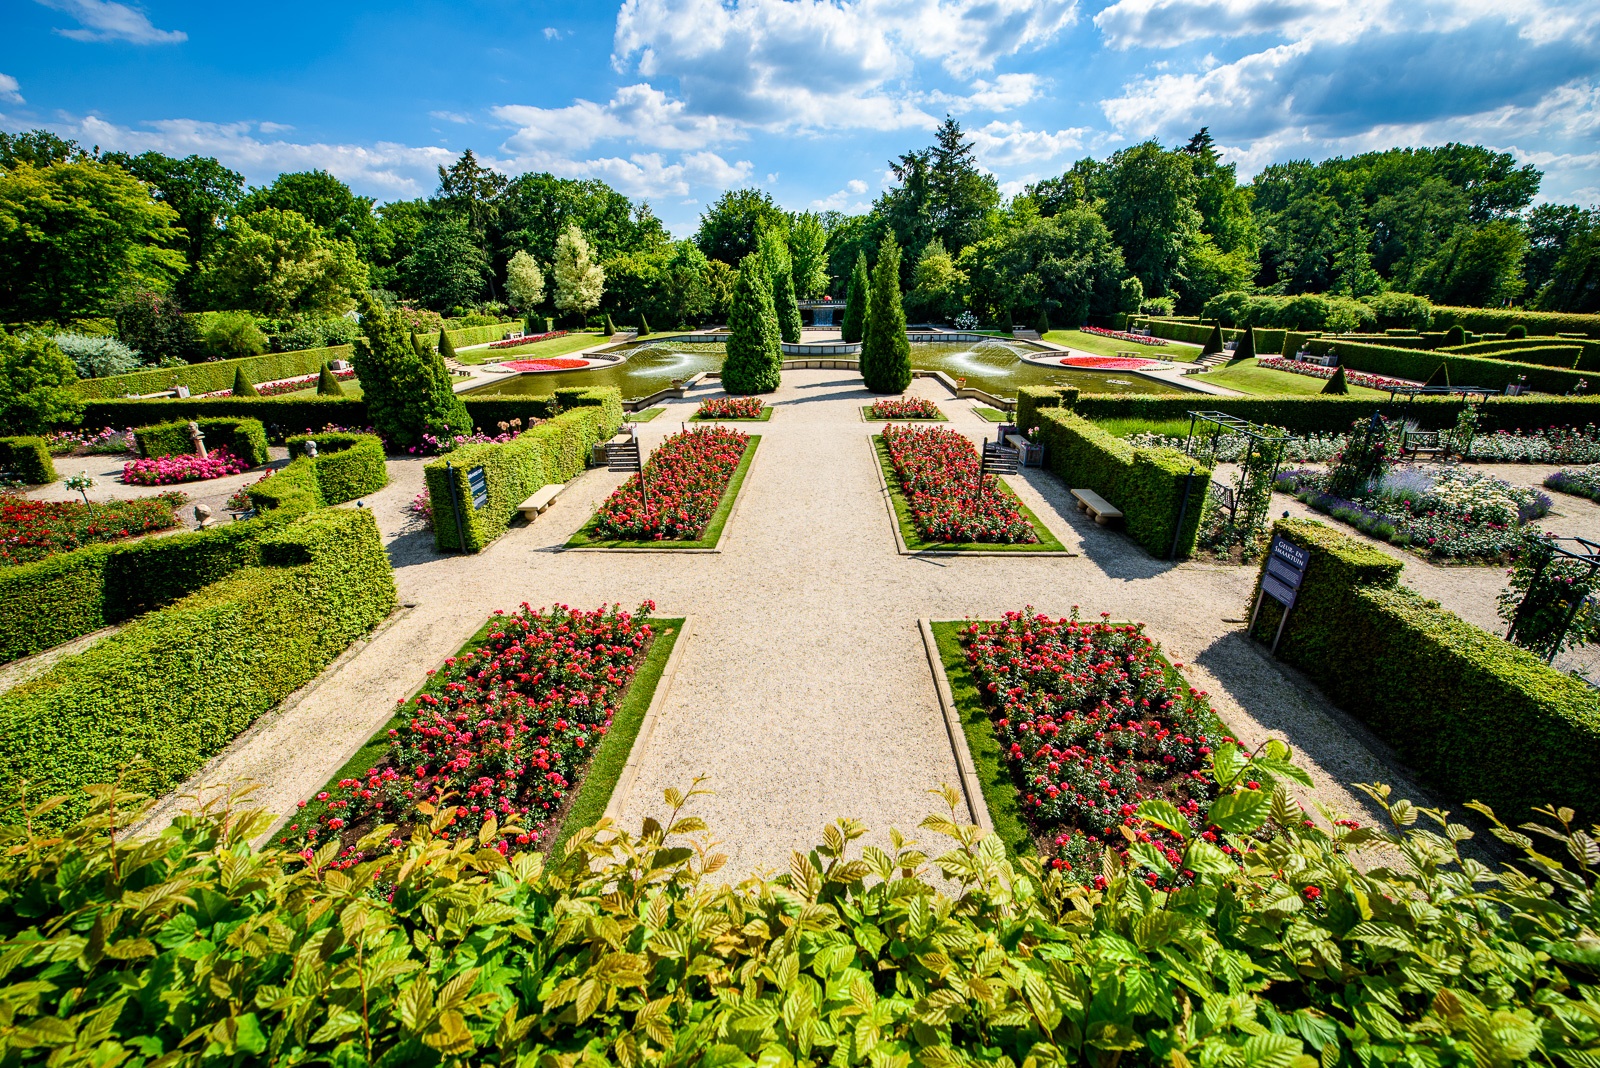 Eintrittspaket Schlossgärten Arcen für zwei Personen im Wert von 54,95 €